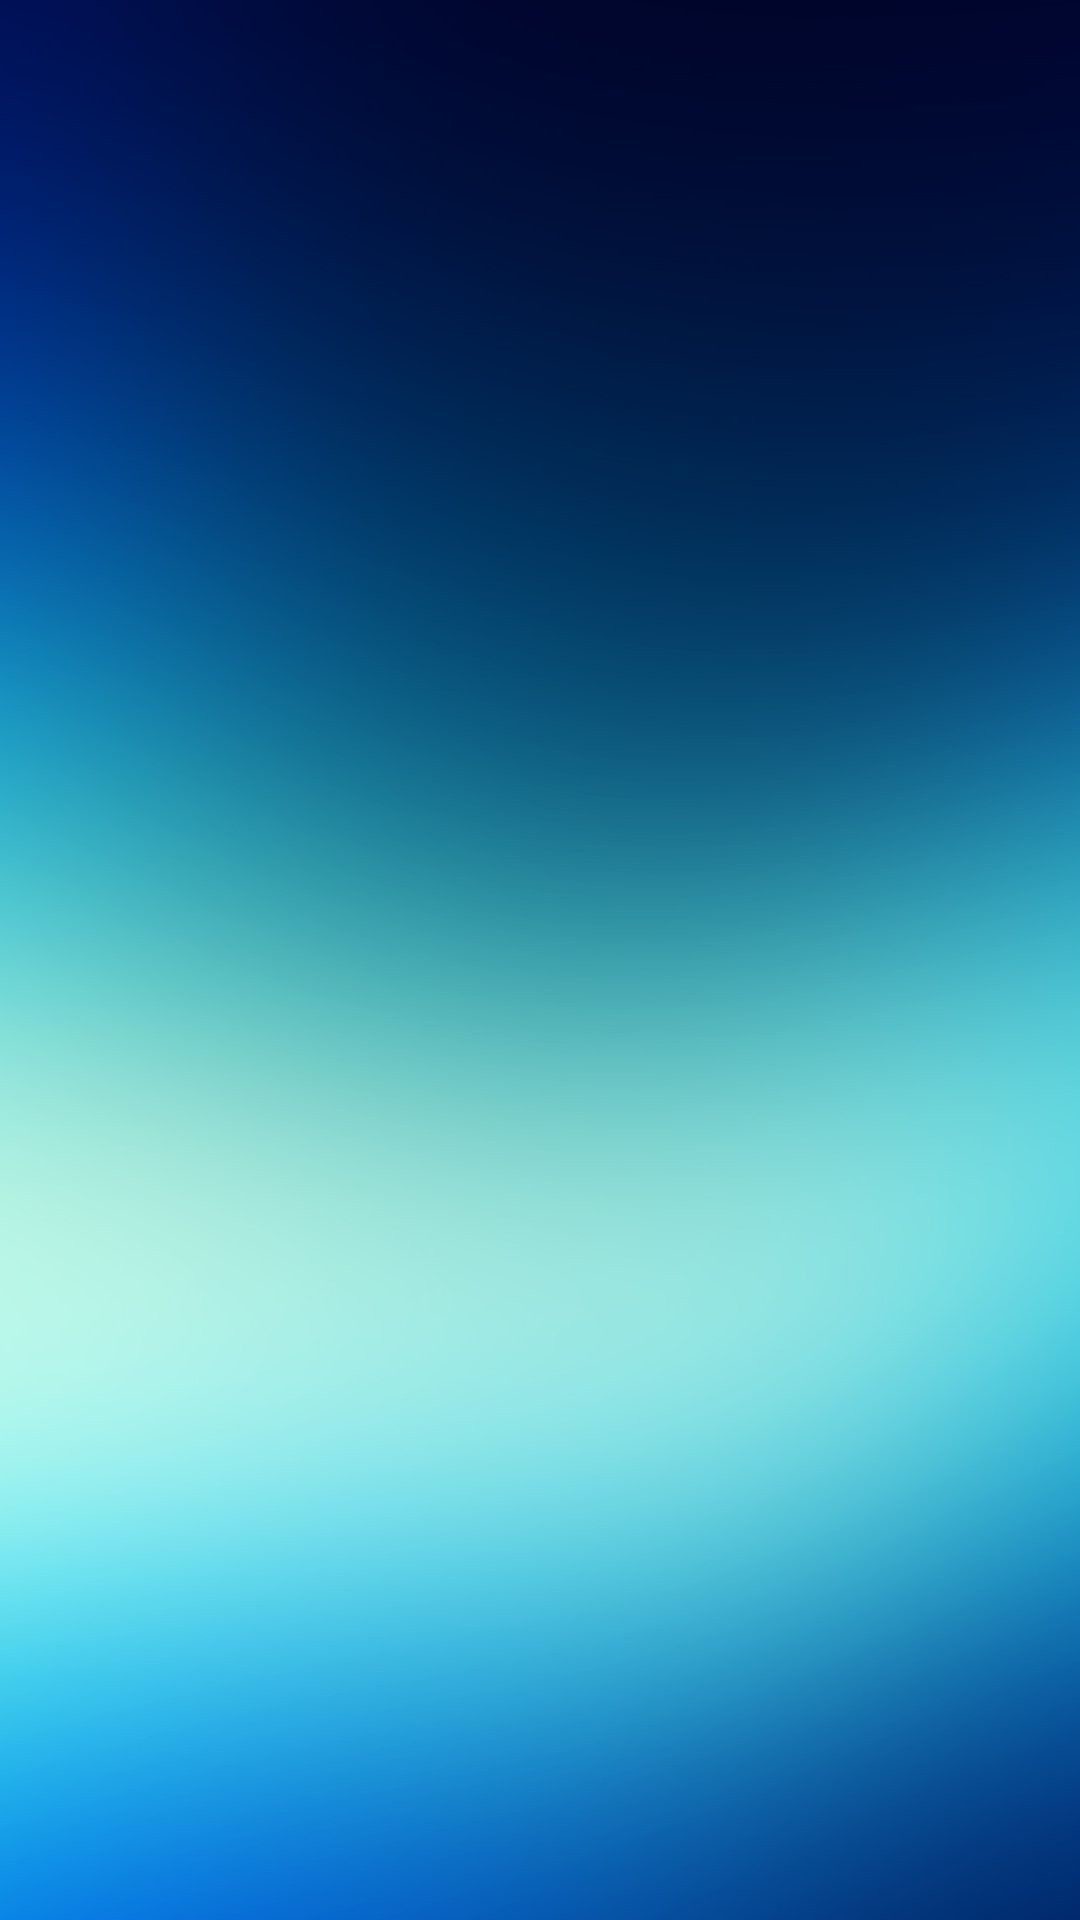 [56+] Blue iPhone 7 Plus Wallpaper | WallpaperSafari